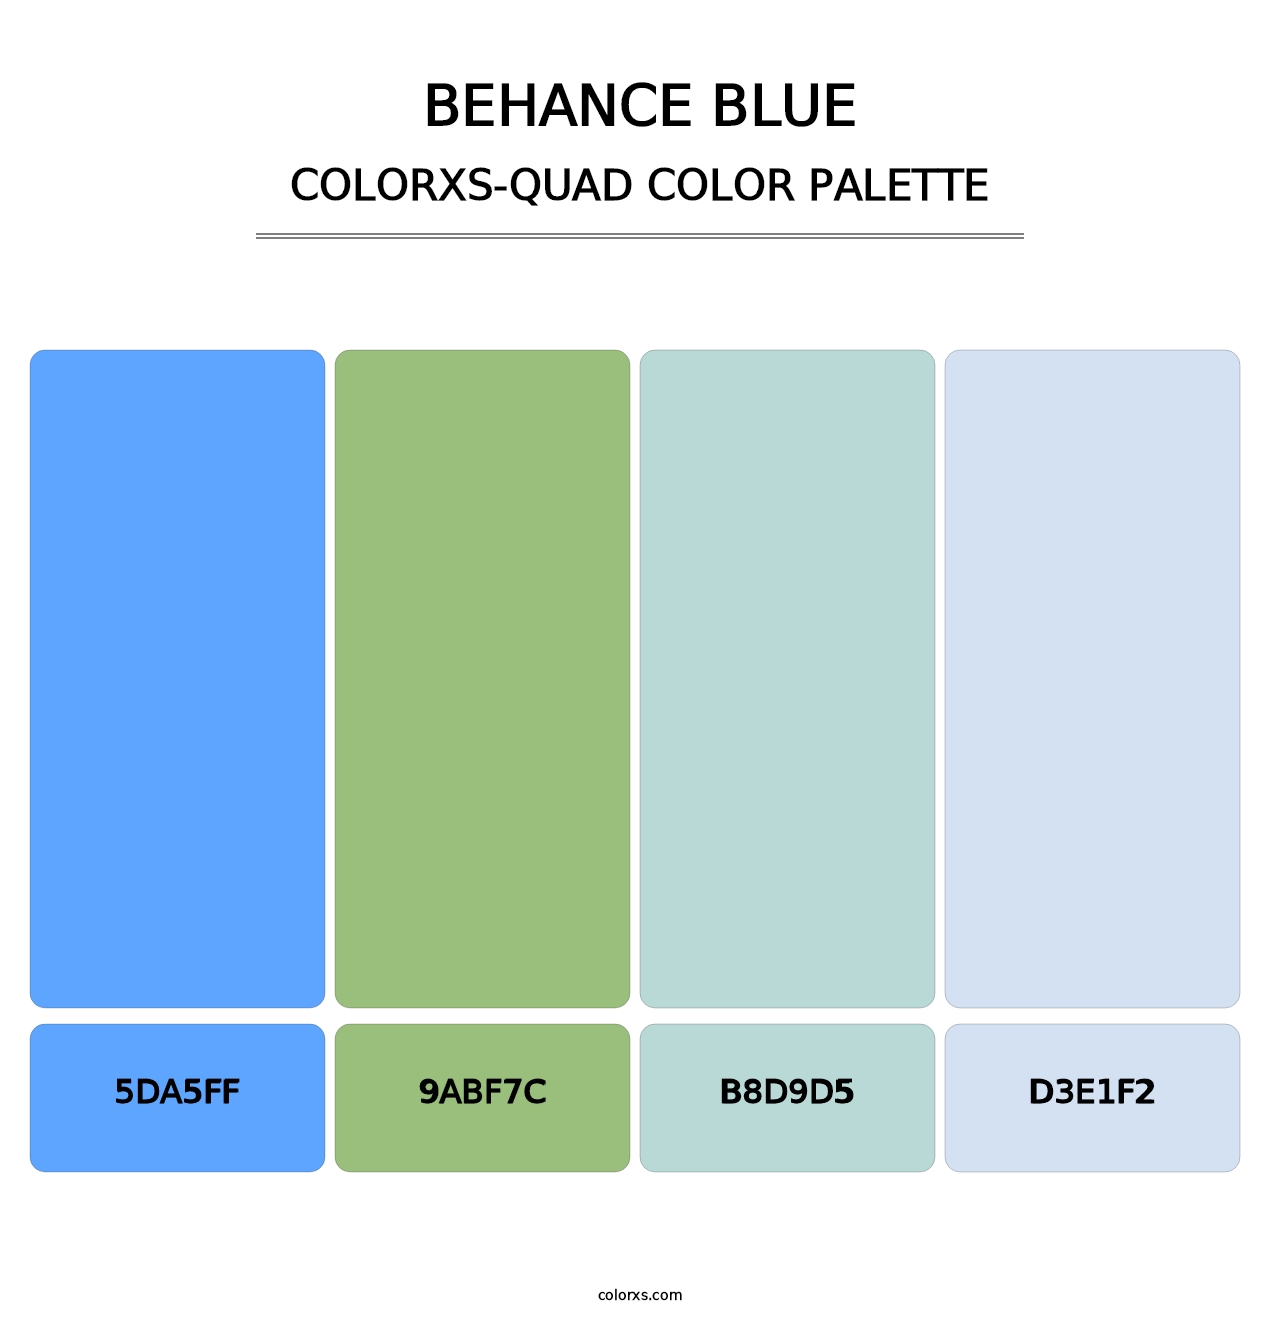 Behance Blue - Colorxs Quad Palette